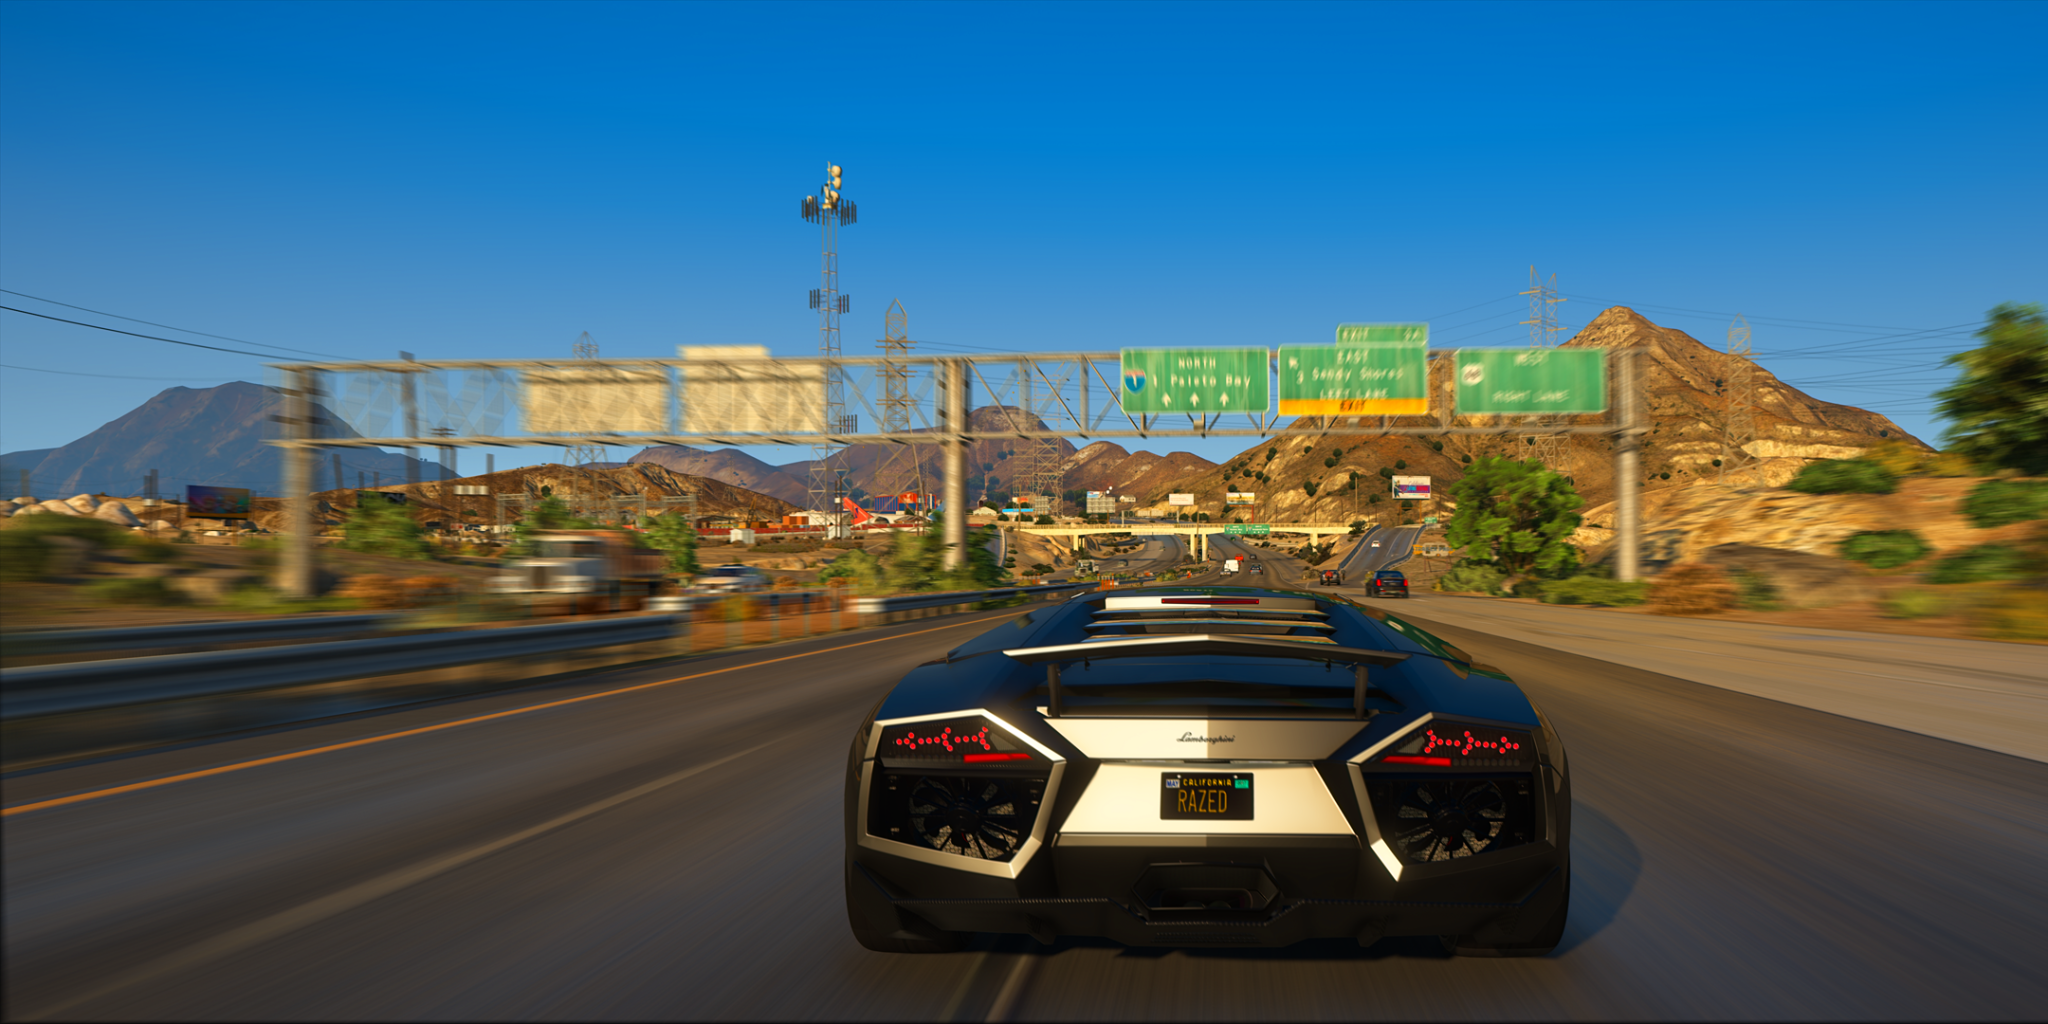 Hình nền GTA 5 4K - Khám phá thành phố Los Santos hoành tráng với hình nền GTA 5 4K độ phân giải cao. Những đường phố sầm uất, cửa hàng đóa hoa lộng lẫy và đông đảo nhân vật sẽ được tái hiện sống động và rõ nét trên màn hình của bạn.